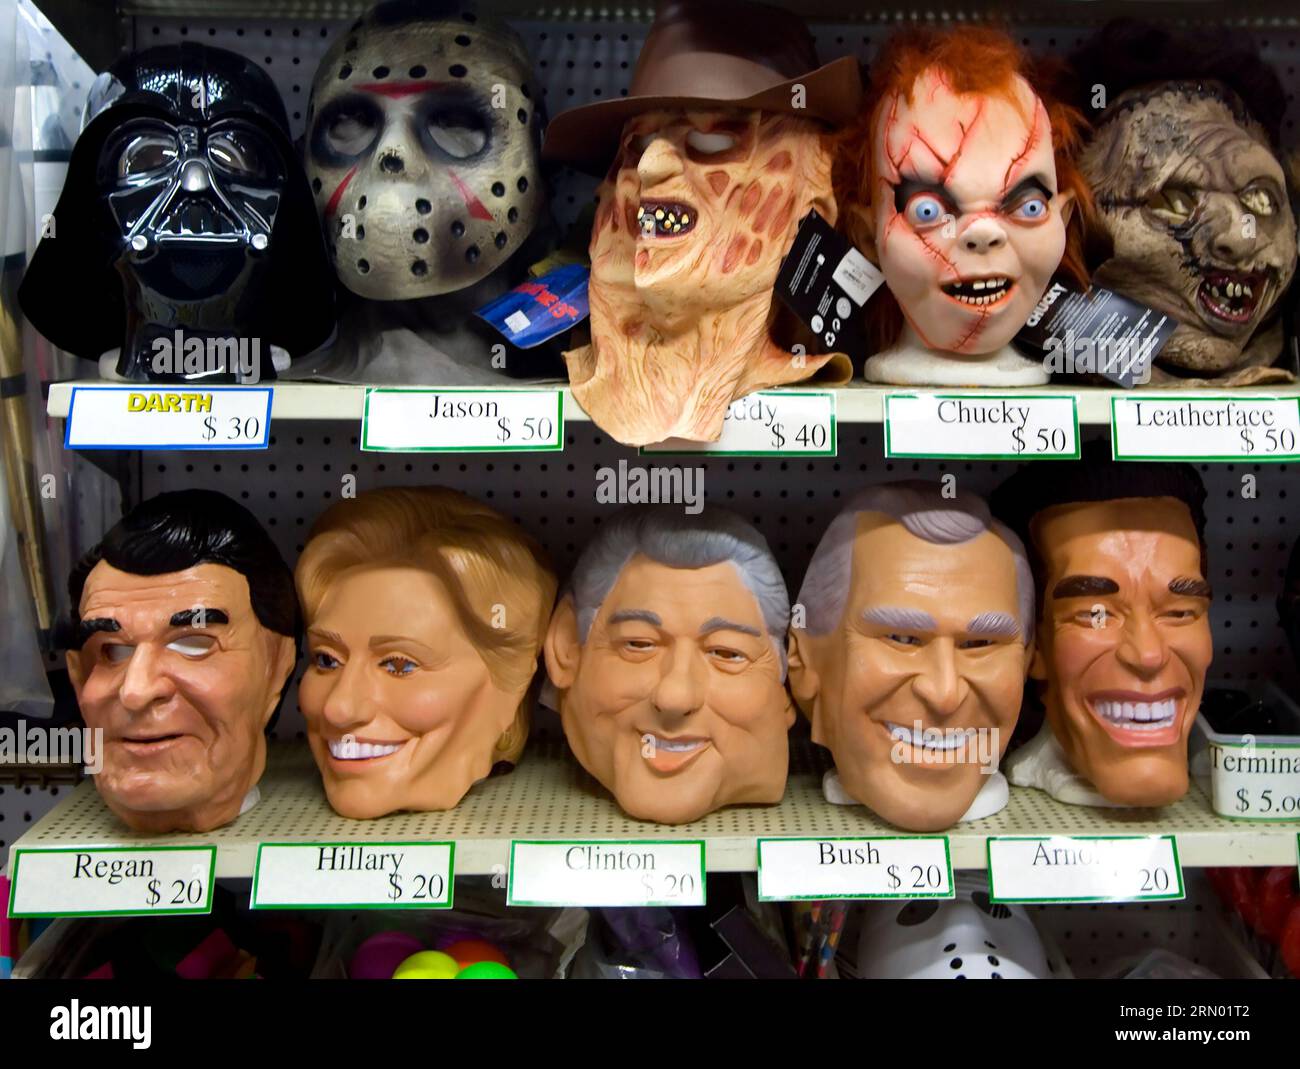 Masques d'Halloween exposés dans une boutique sur Hollywood Blvd. Inclure des monstres et des politiciens américains, vers les années 1980, Los Angeles, Californie, États-Unis Banque D'Images